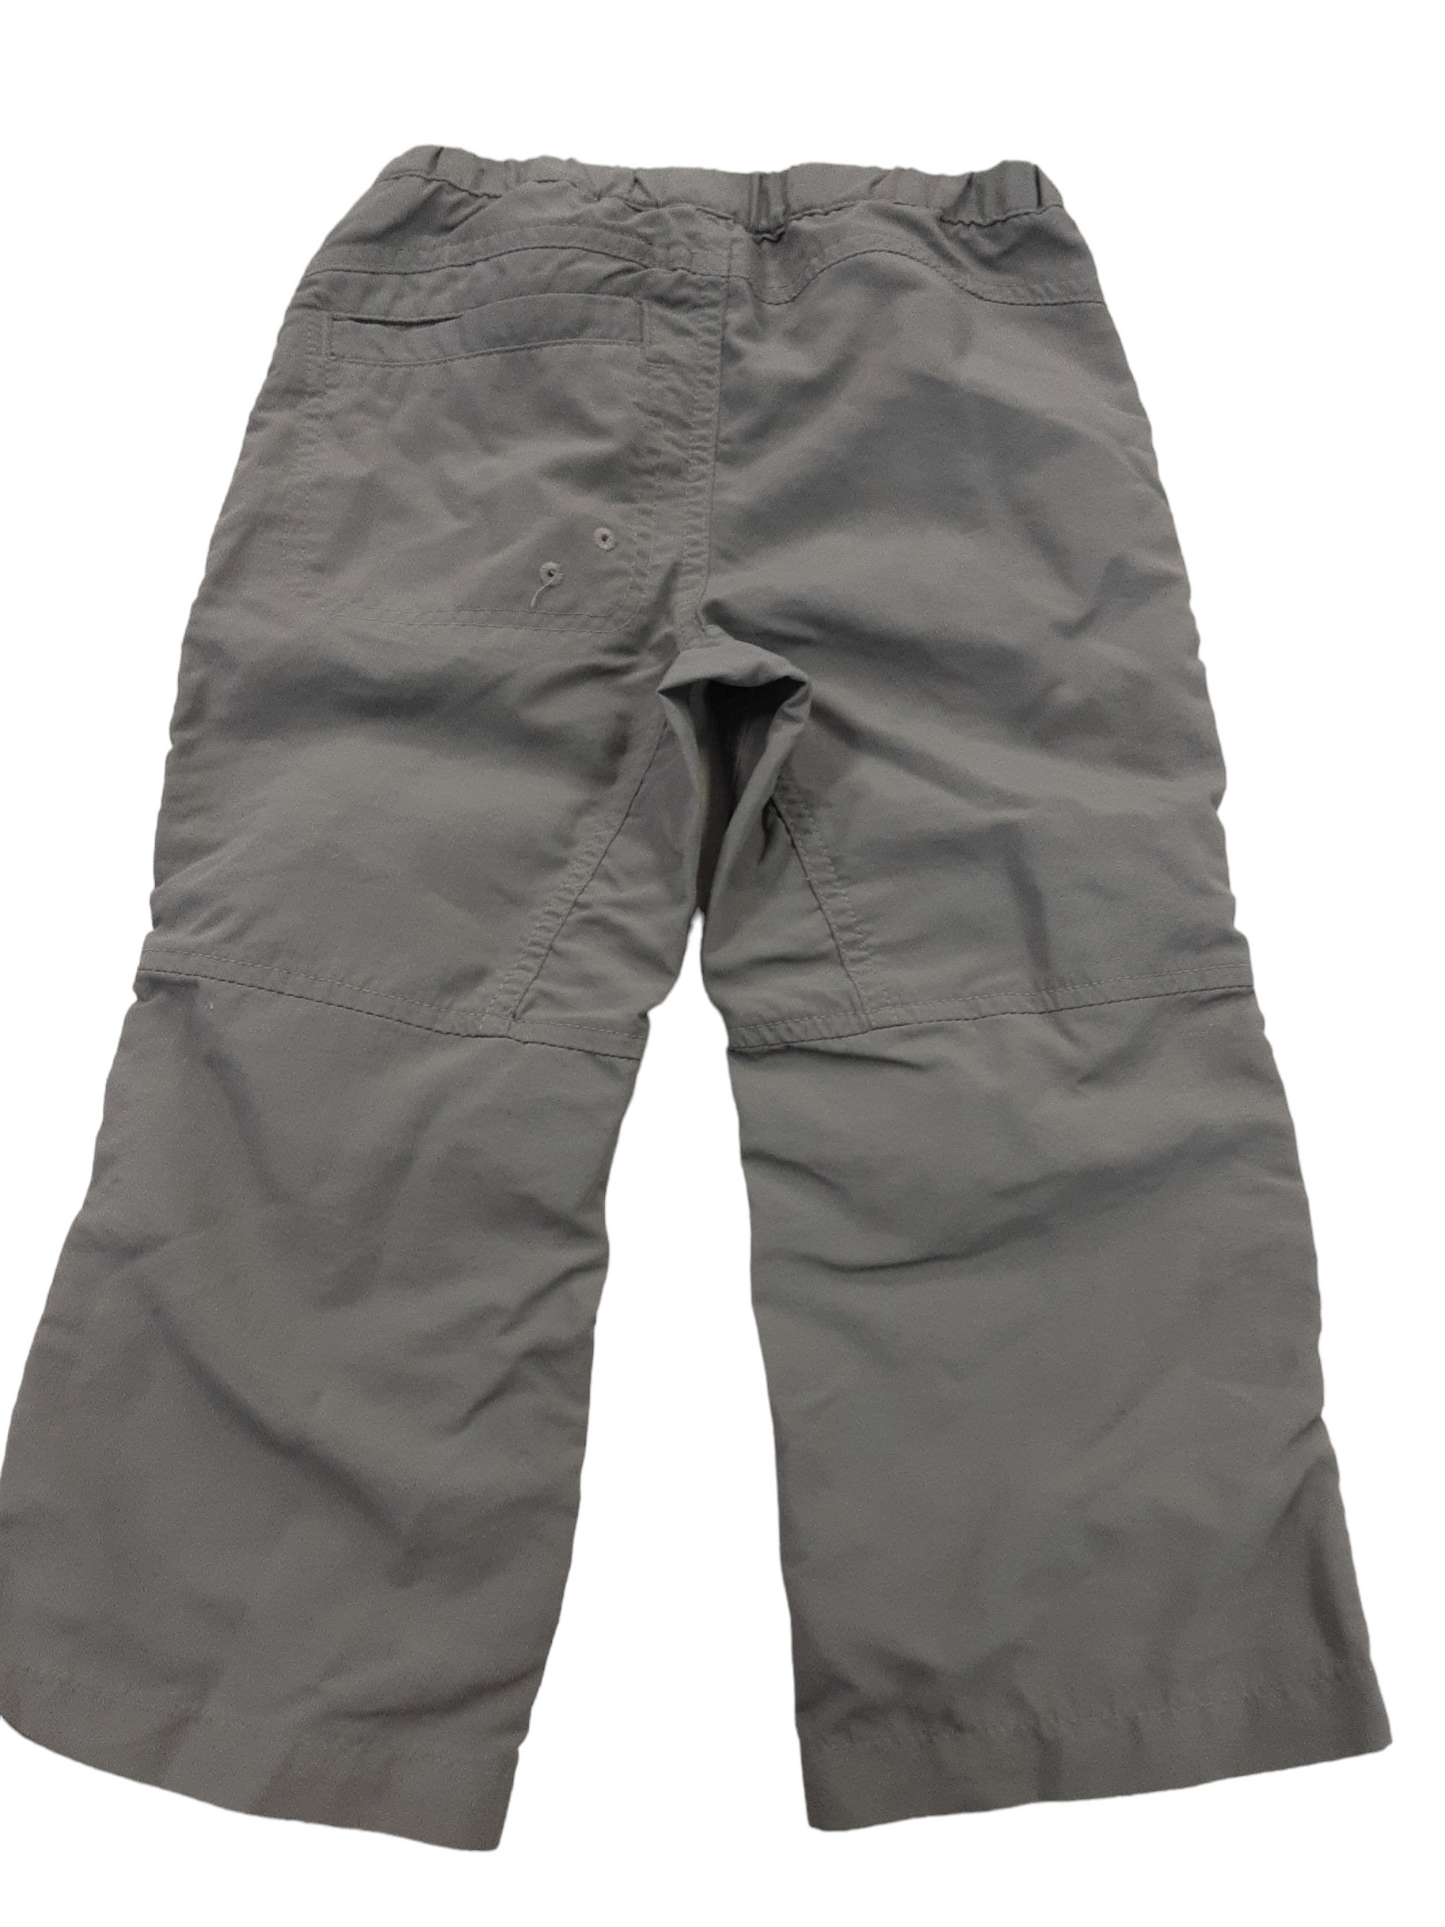 Boys elastic waist grey pants size 24m